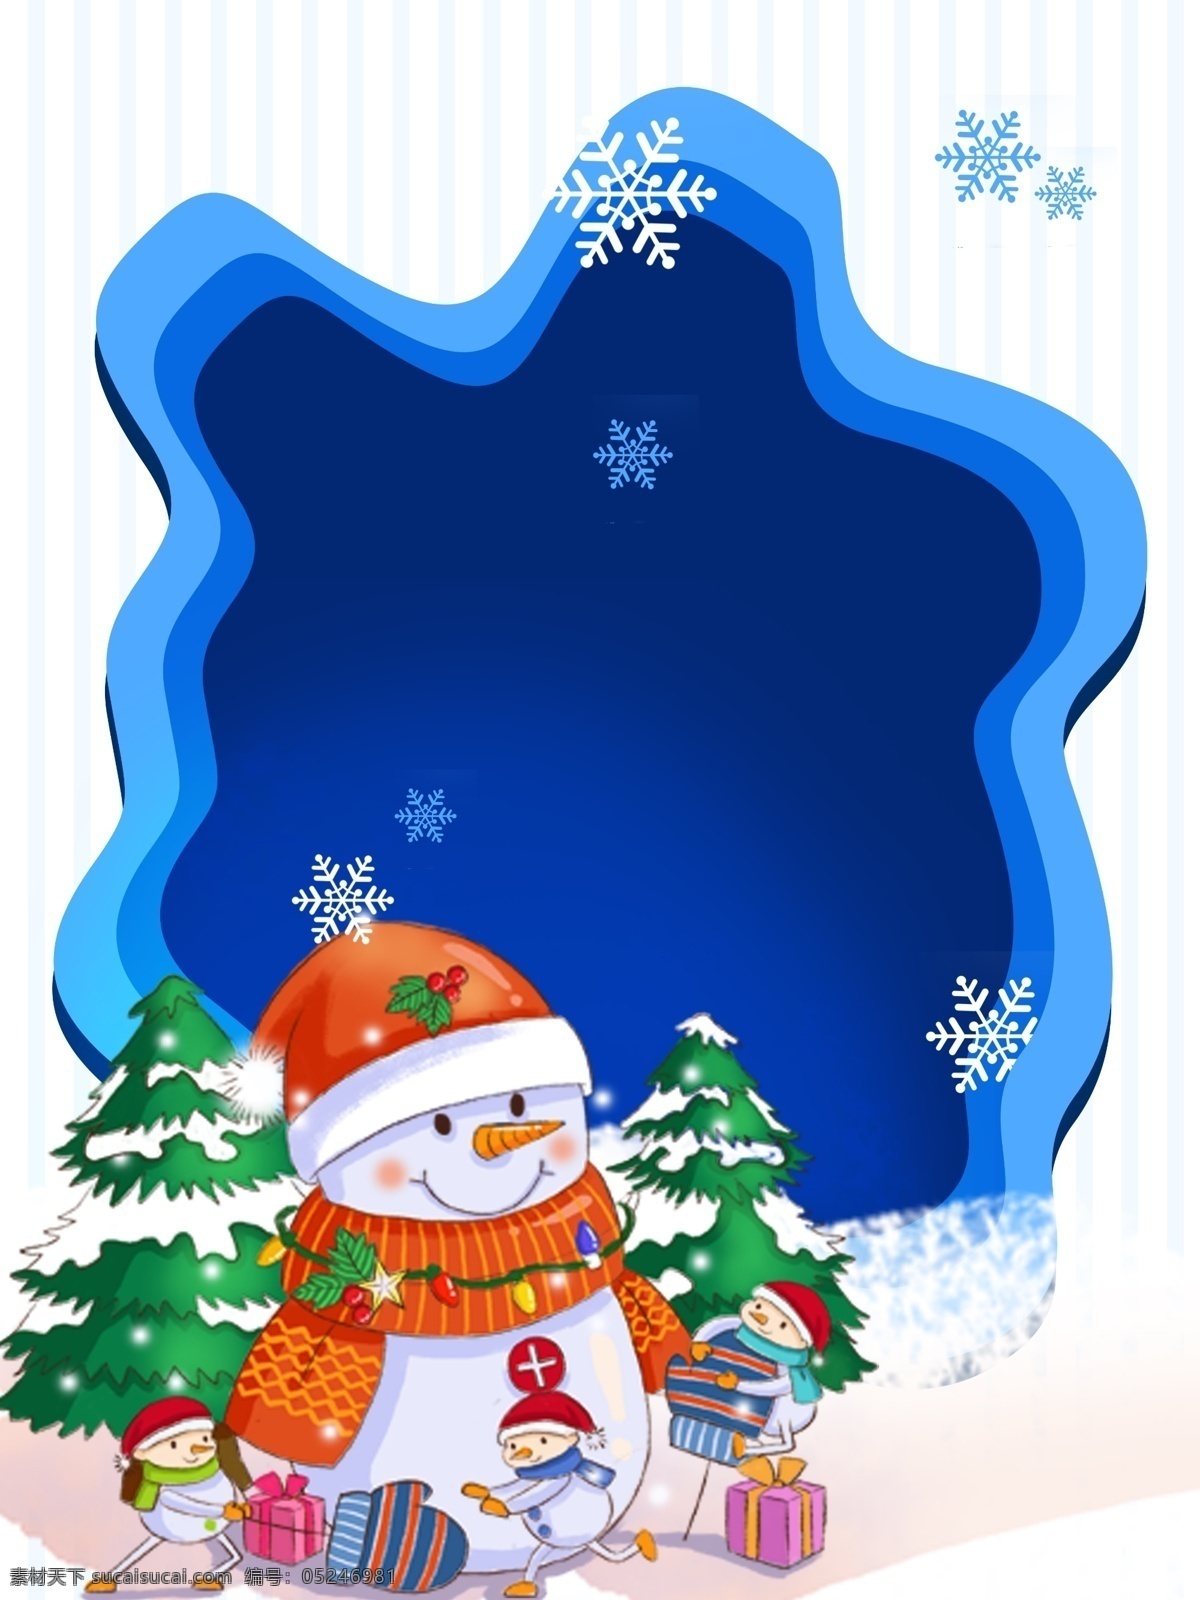 传统 冬季 节气 雪人 背景 唯美 简约 蓝色 雪地 冬天 冬至背景 下雪 冬至节气